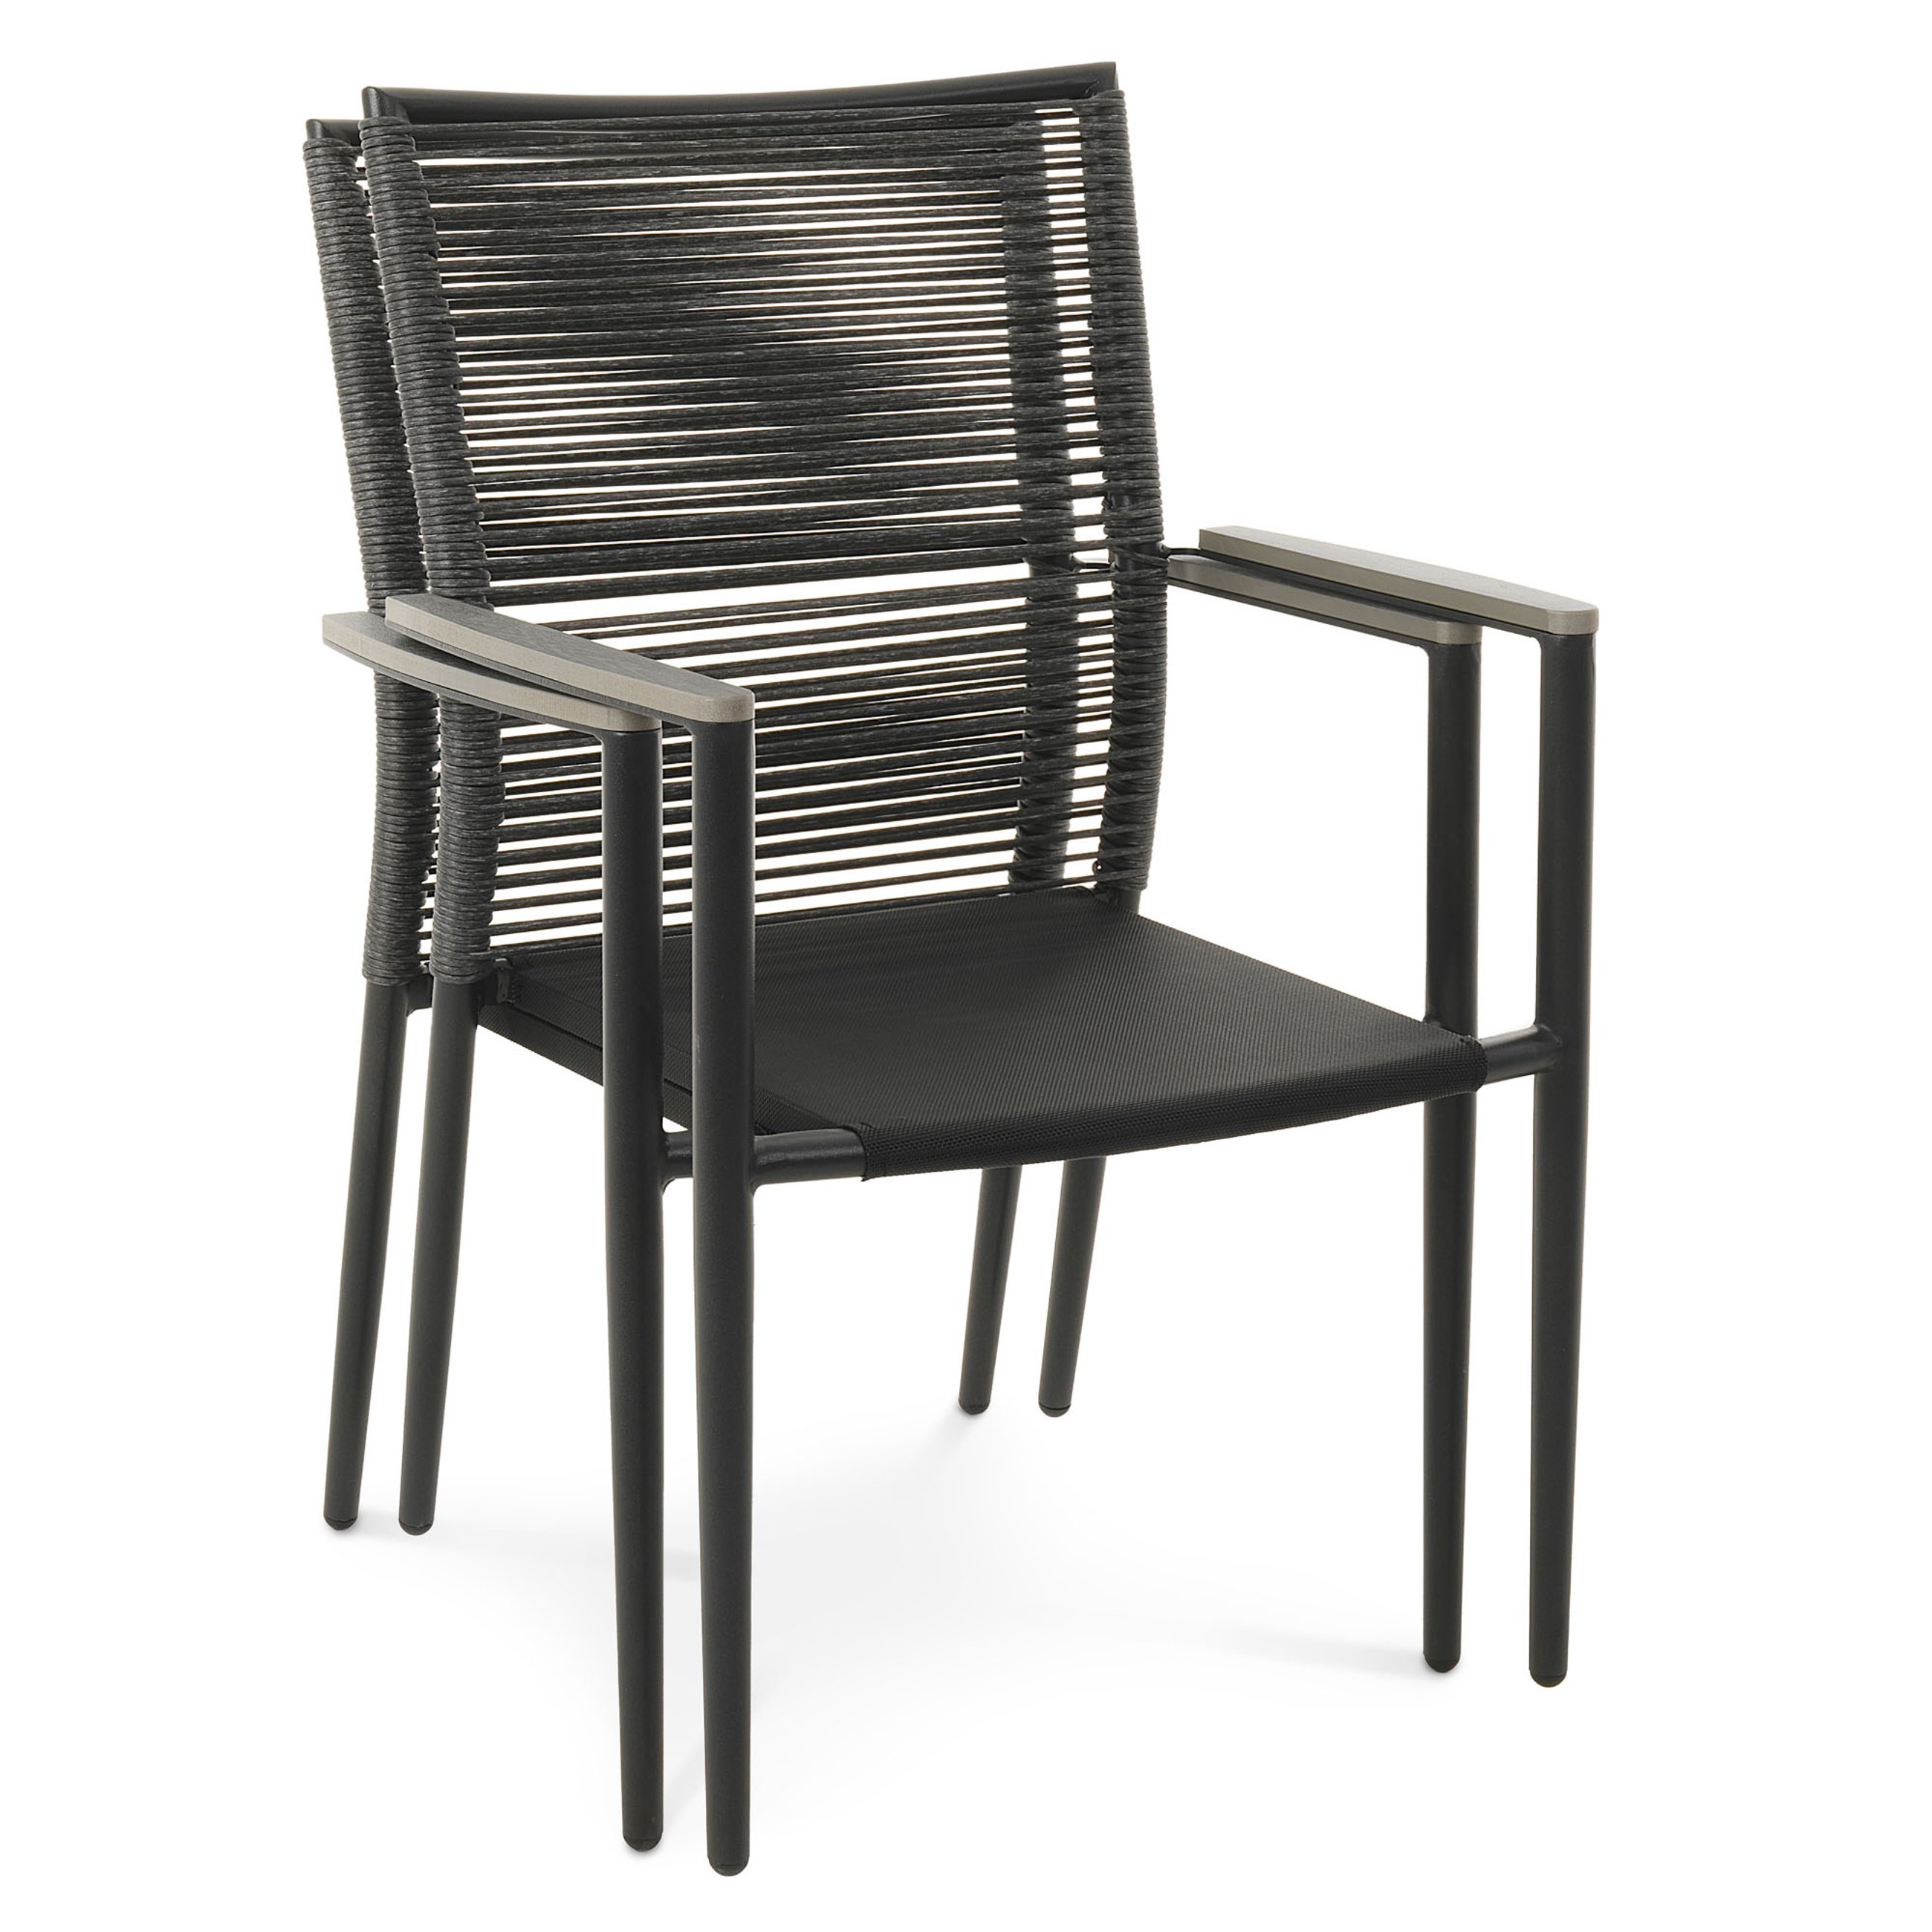 Możliwość sztaplowania krzeseł Asti szary w komplecie 2 sztuk.